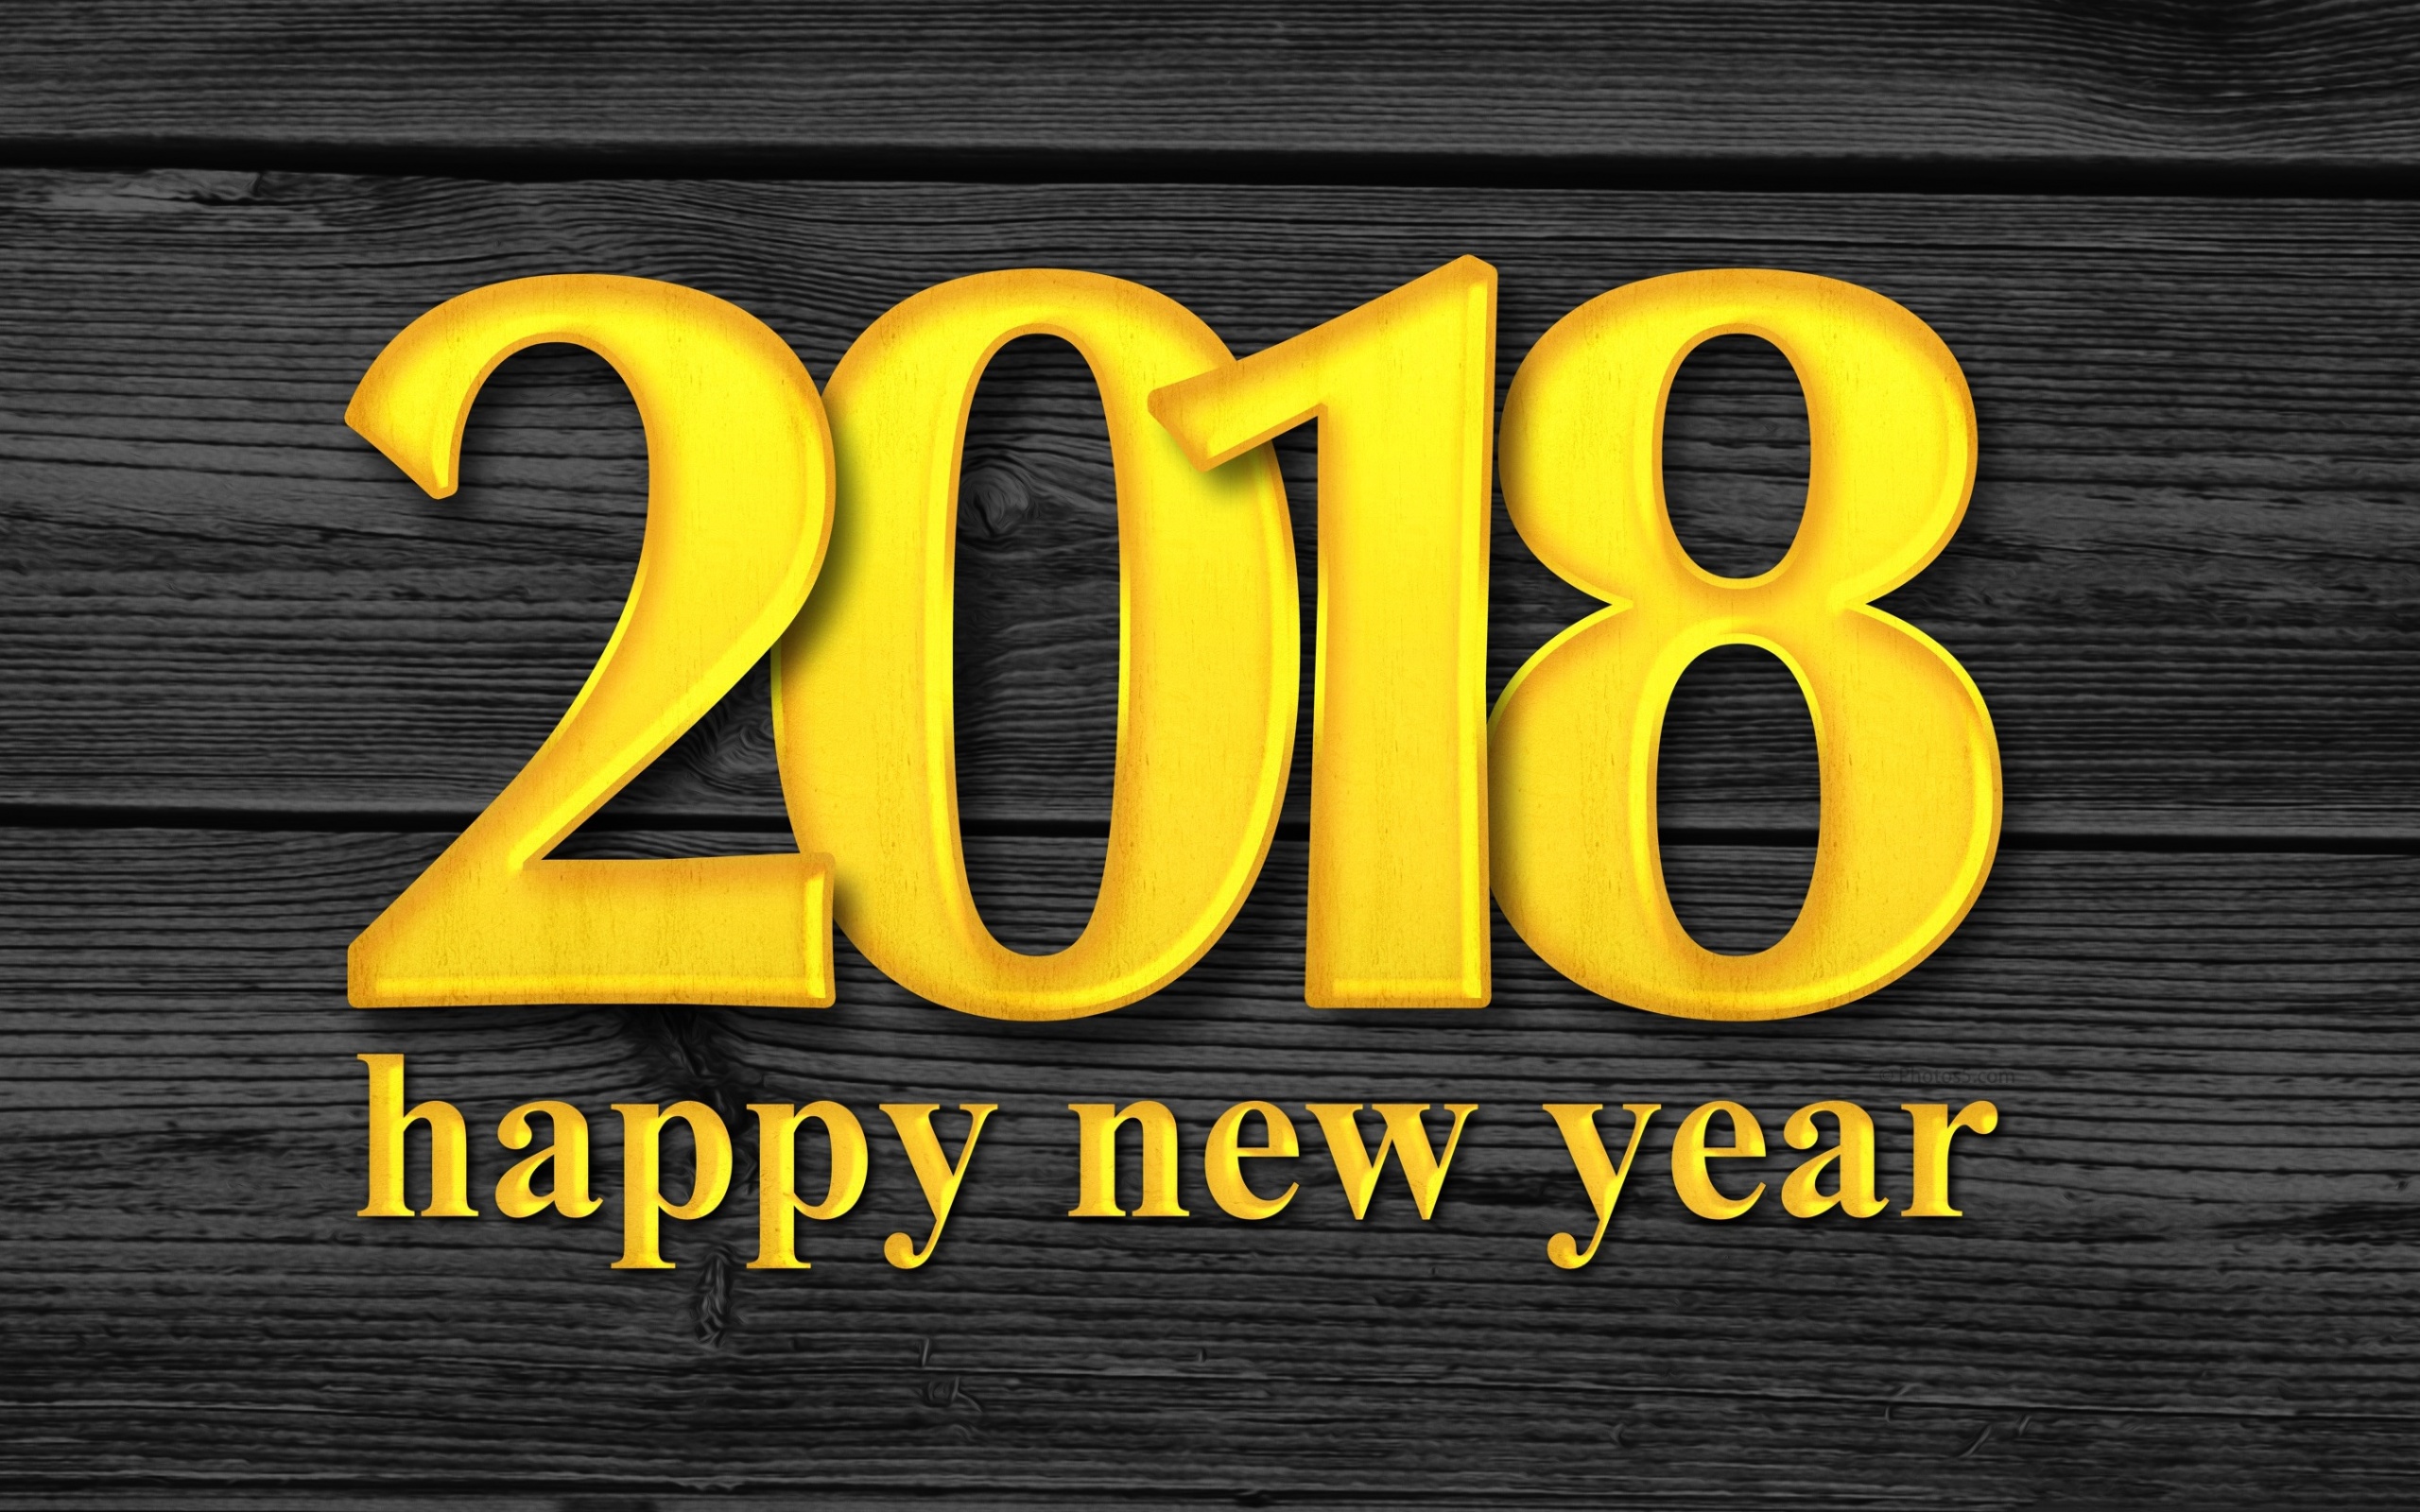 Happy New Year In 2018 - HD Wallpaper 